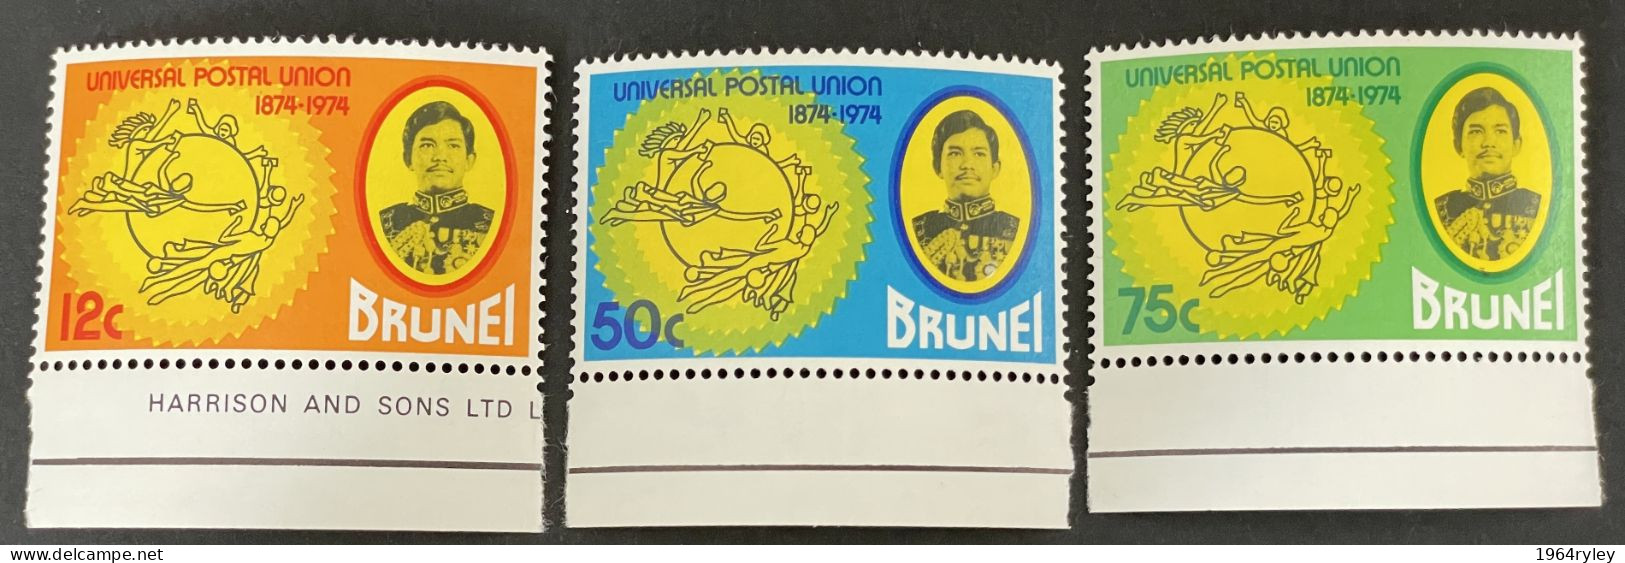 BRUNEI - MNH** - 1974 Universal Postal Union Centenary  - # 206/208 - Bangladesh